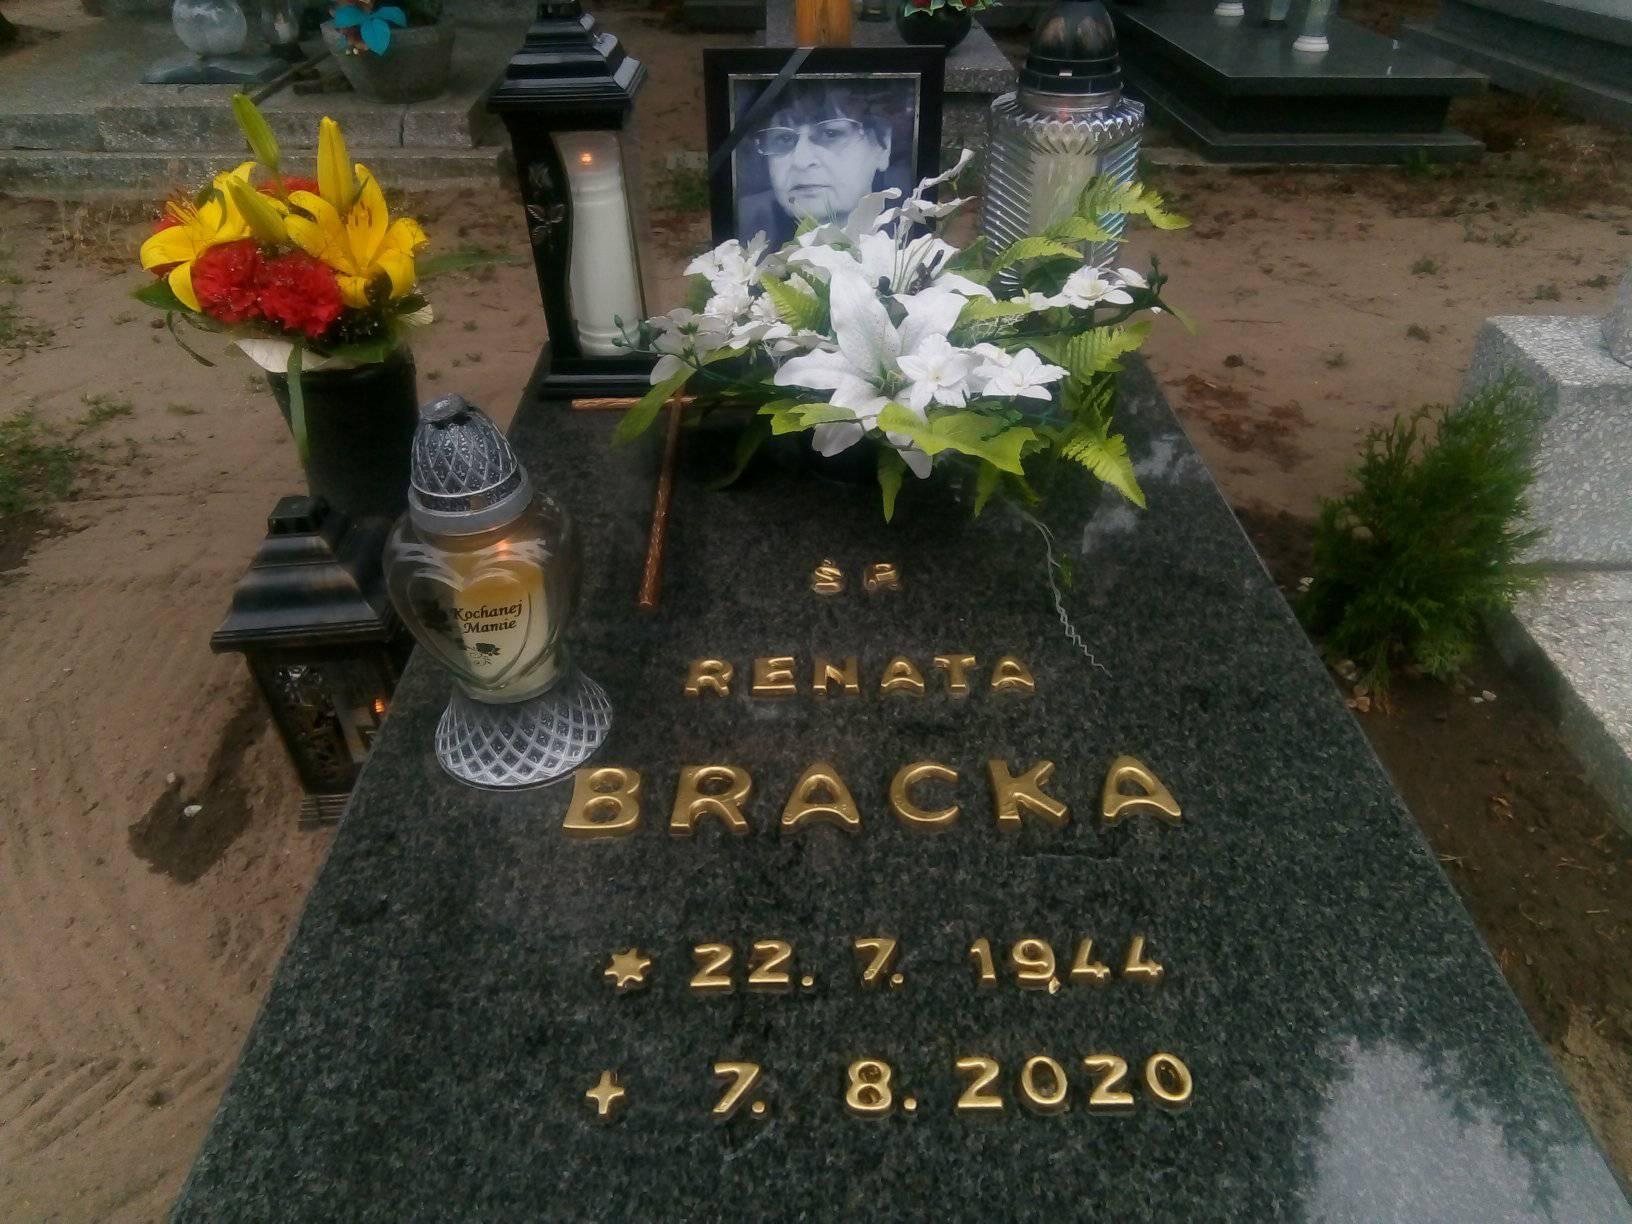 Dziś 7 lipca mija 11 miesięcznica śmierci mojej ukochanej Mamy ś.p. Renaty Bracka, którą teraz odwiedziłem na cmentarzu komunalnym w Więcborku.   Tomasz Roman Bracka